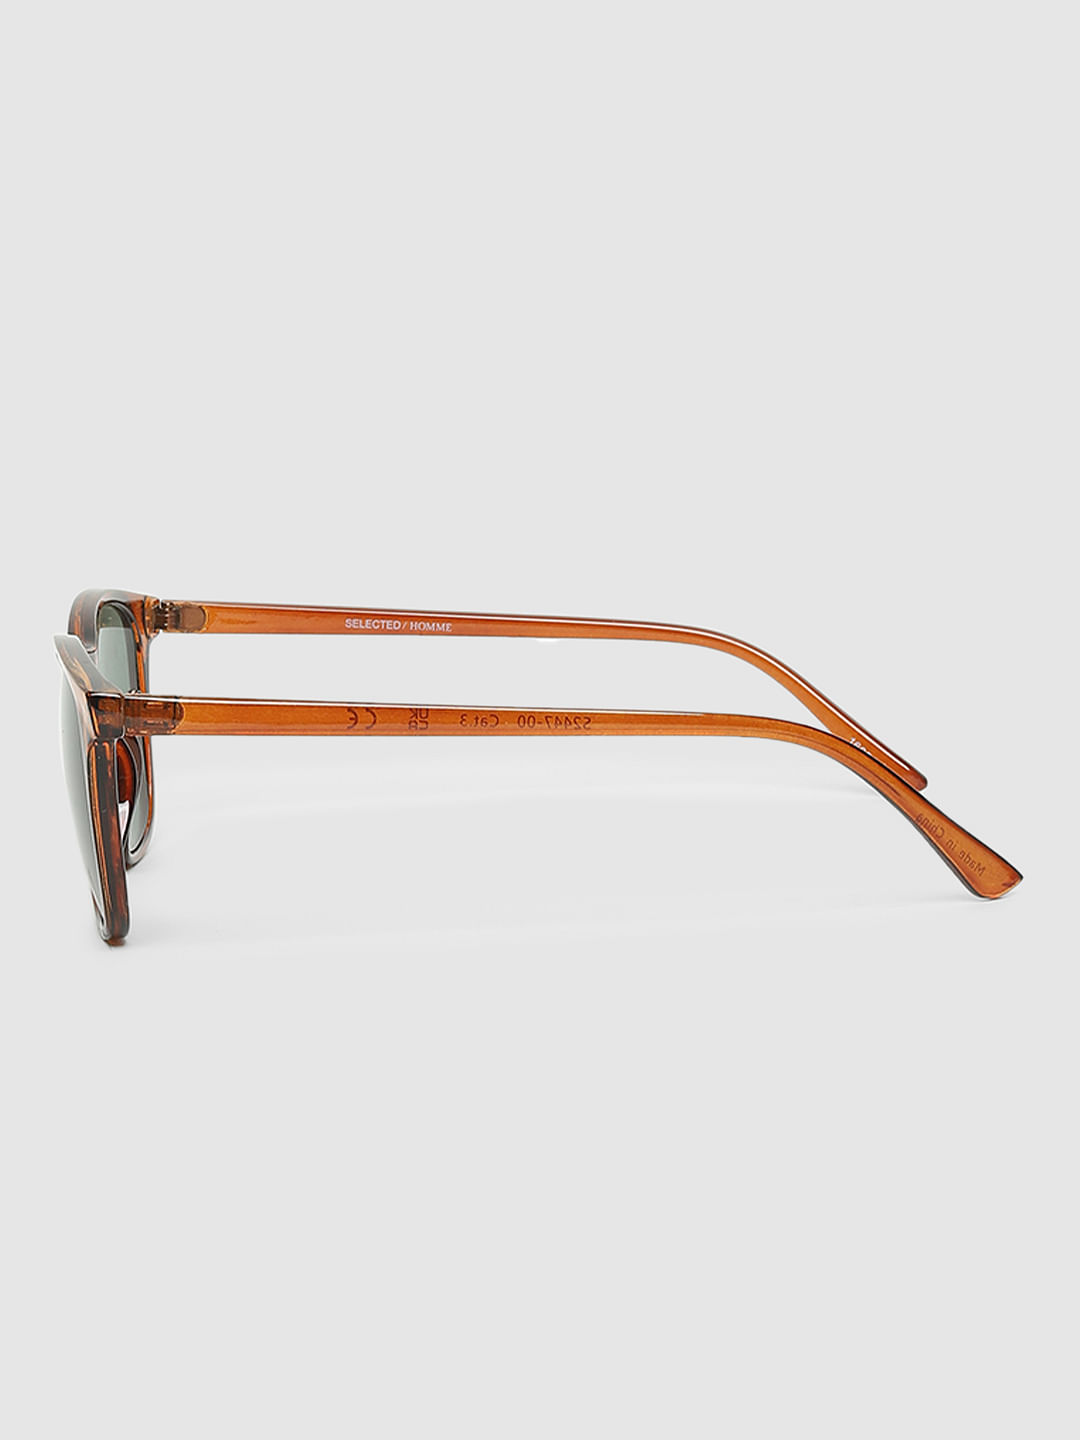 Buy Eyeglasses Online: Buy Latest Glasses Frames, Spectacles